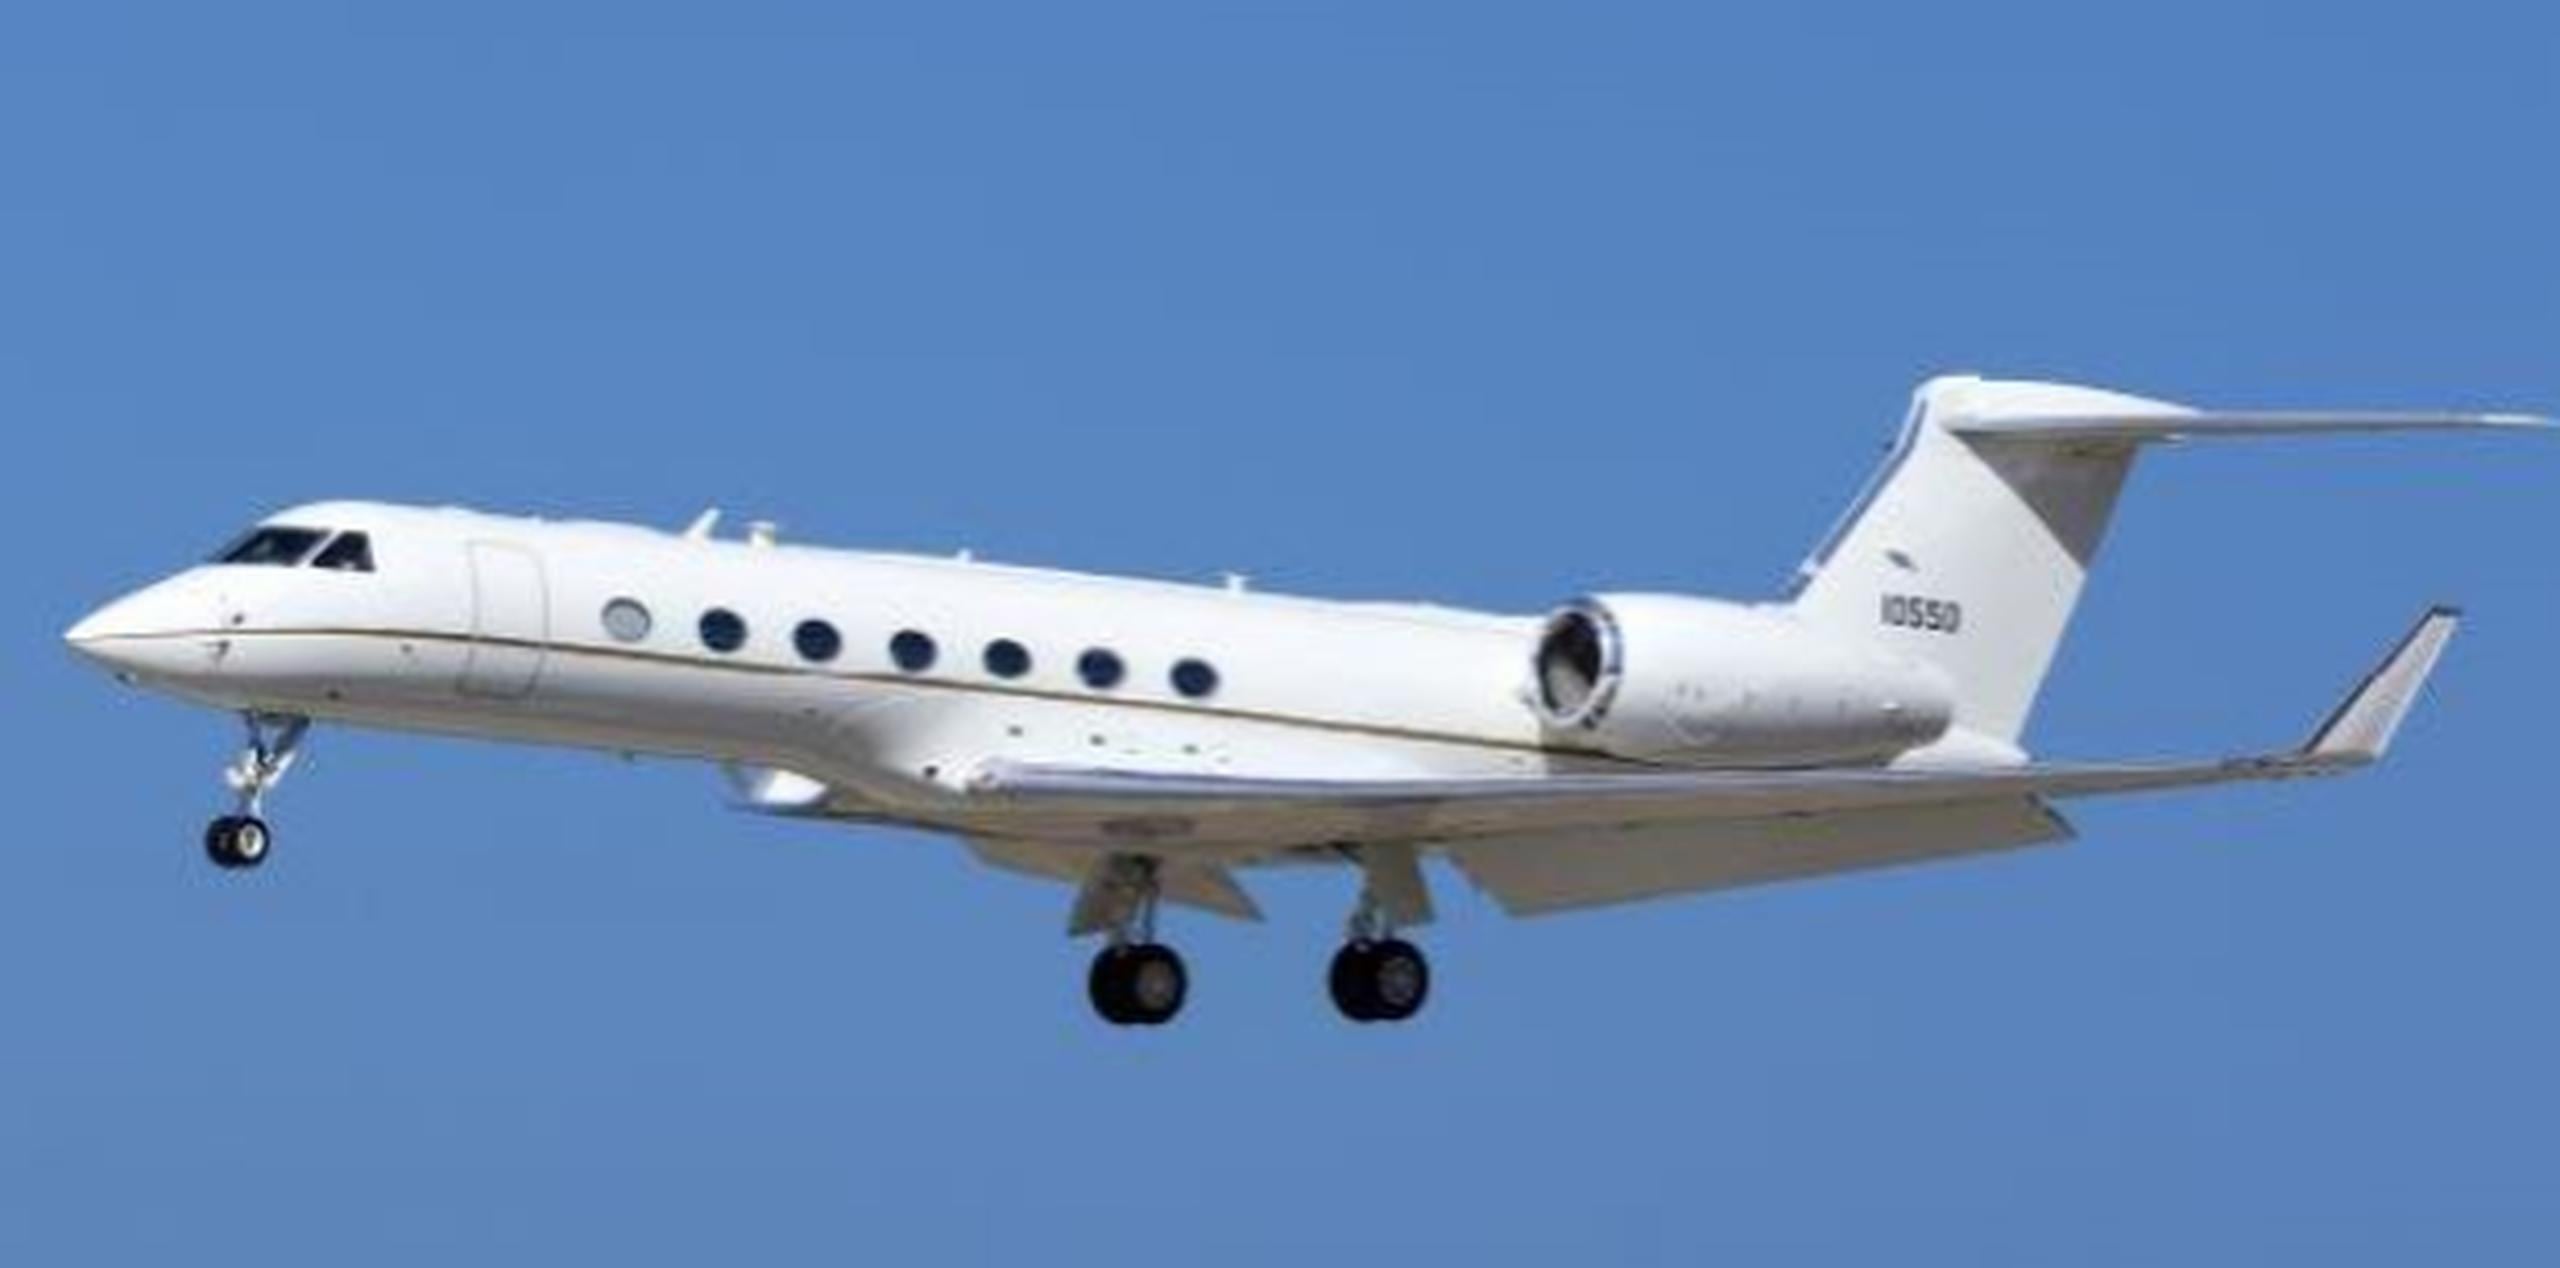 La aeronave accidentada es un Gulfstream 3, como el que se ilustra en la foto. (Shutterstock)